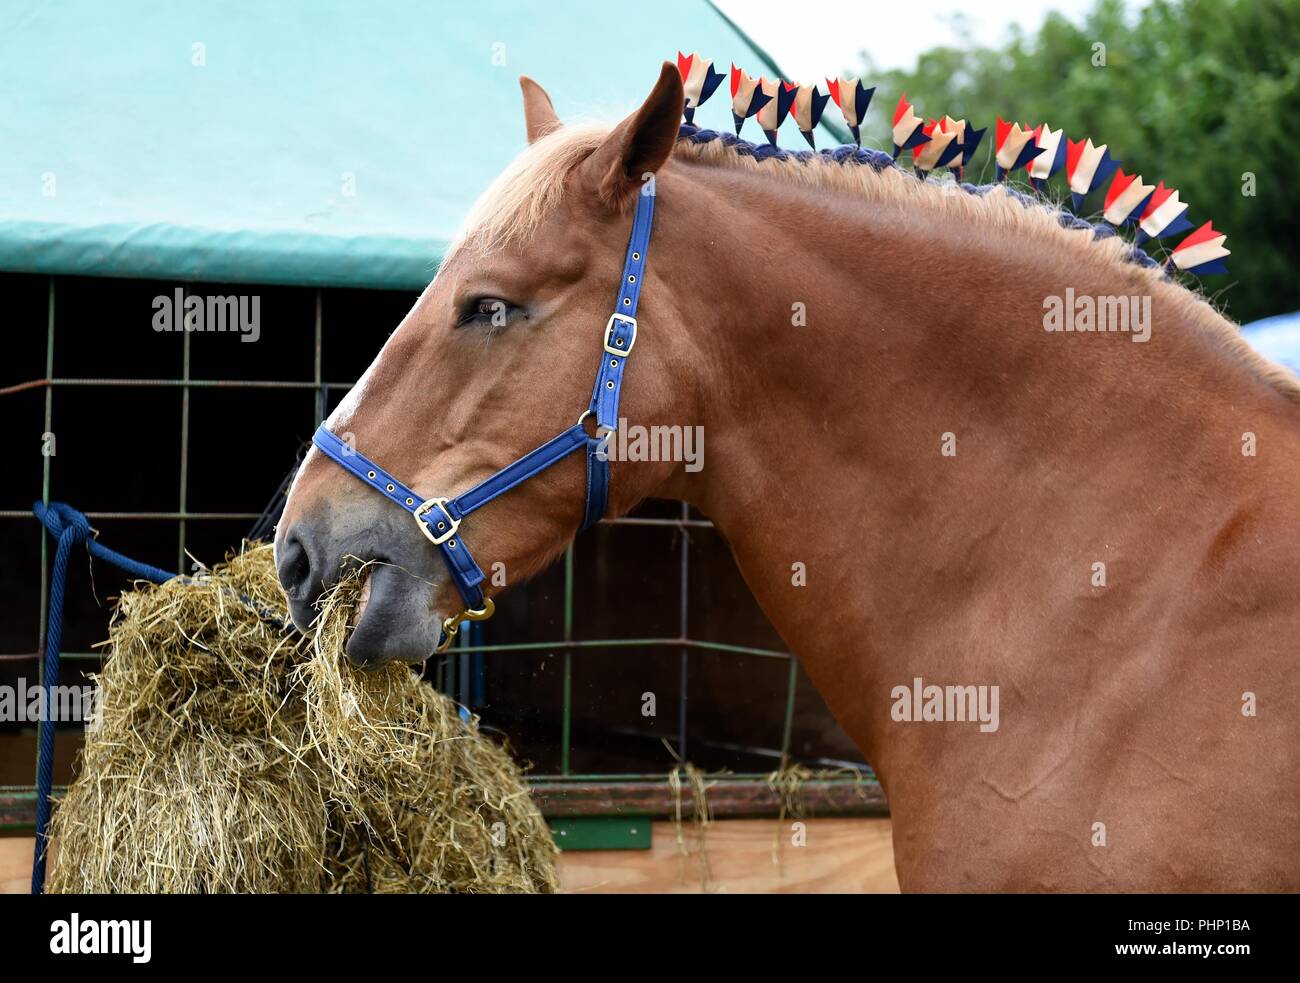 Dorchester, Dorset, UK. 2e Septembre, 2018. Dorset County Show, cheval lourd a quelque chose à manger. Finnbarr Crédit : Webster/Alamy Live News Banque D'Images